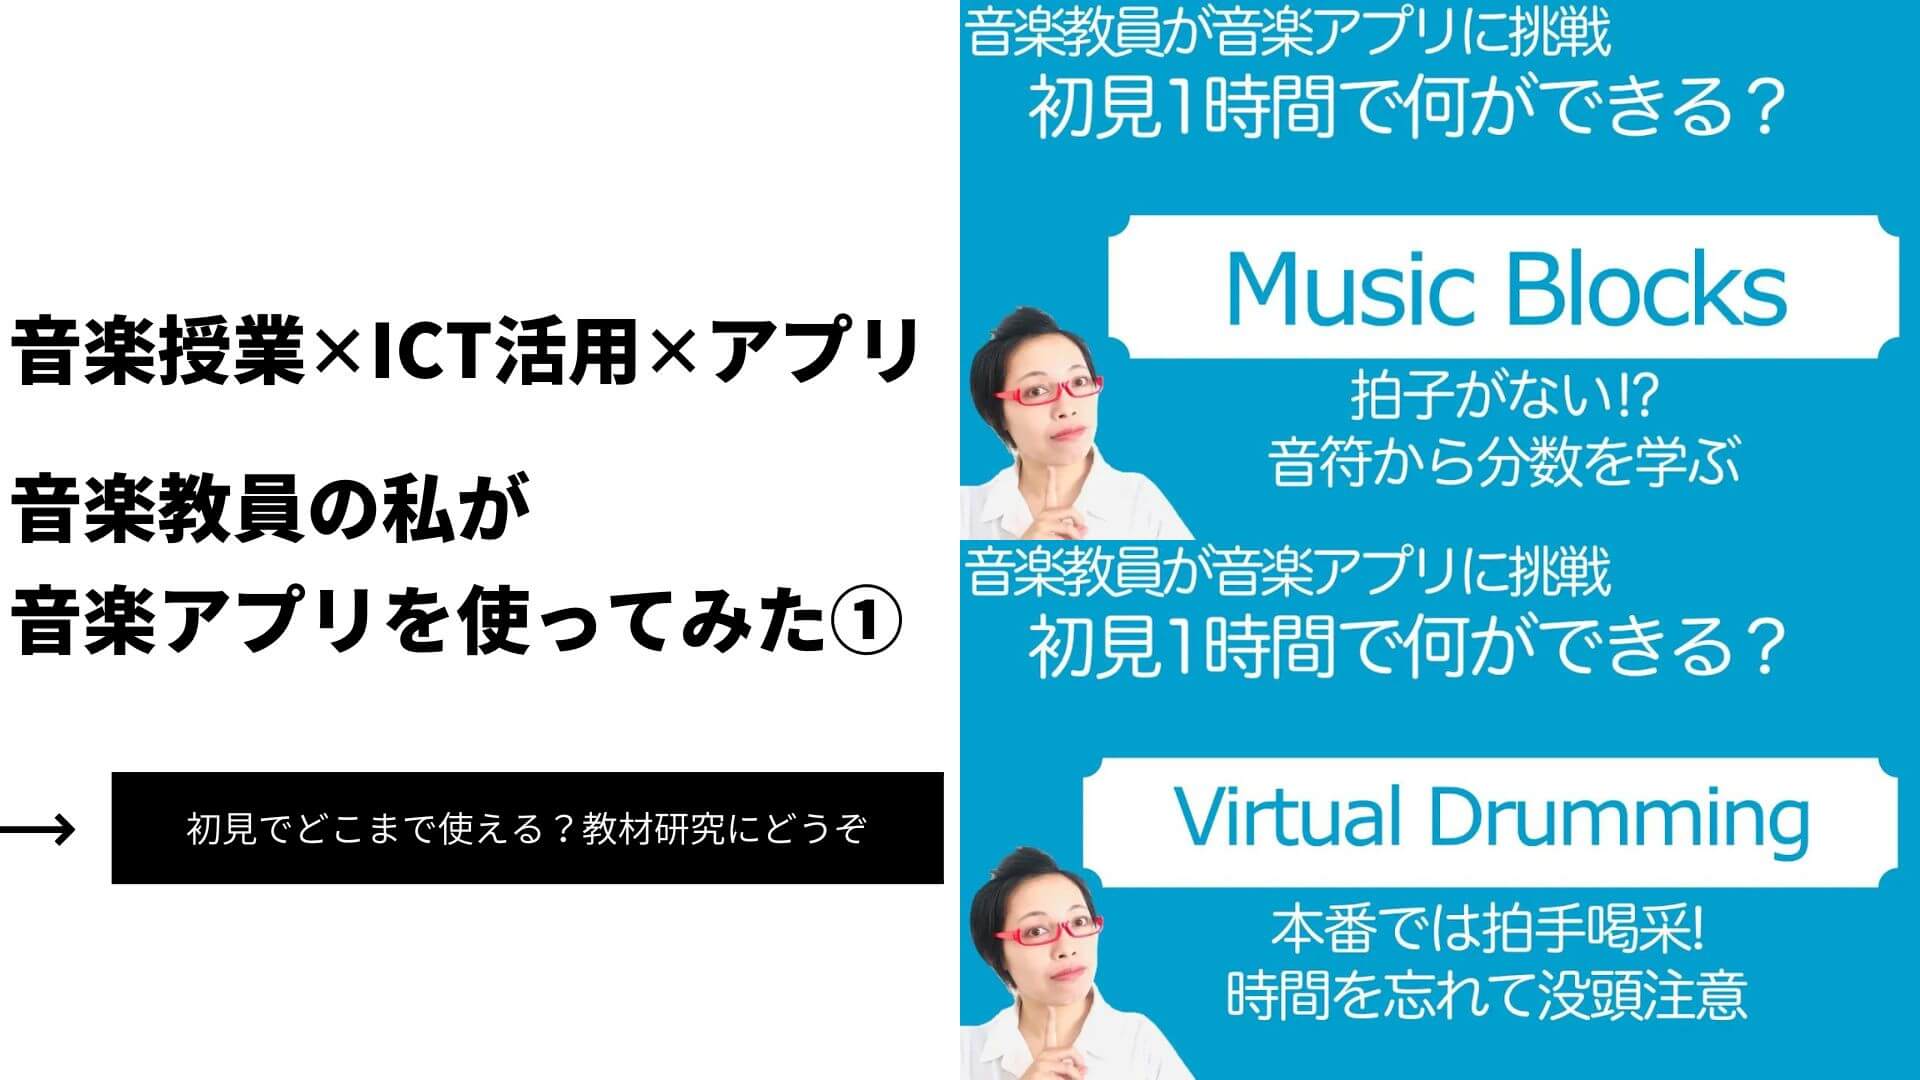 【音楽授業✕ICT活用✕アプリ】音楽教員の私が音楽アプリを使ってみた①（MusicBlocks・Virtual Drumming）